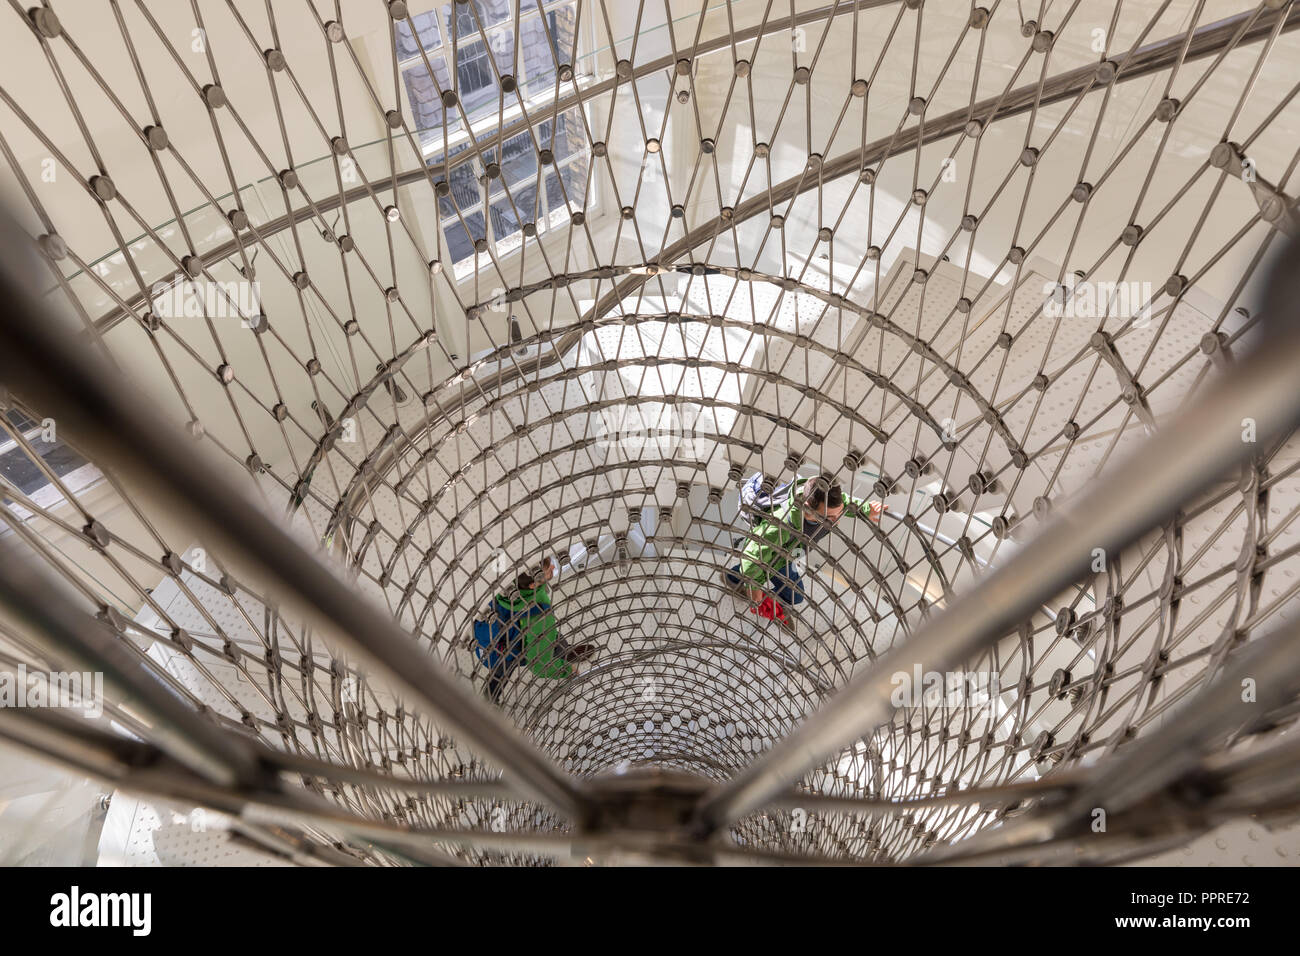 Die Meilen, die Treppen, ein elegantes, zeitgenössisches Stahlgewebe Wendeltreppe mit transparenten Balustrade von Eva Jiricna Architekten, Somerset House, London, Großbritannien Stockfoto